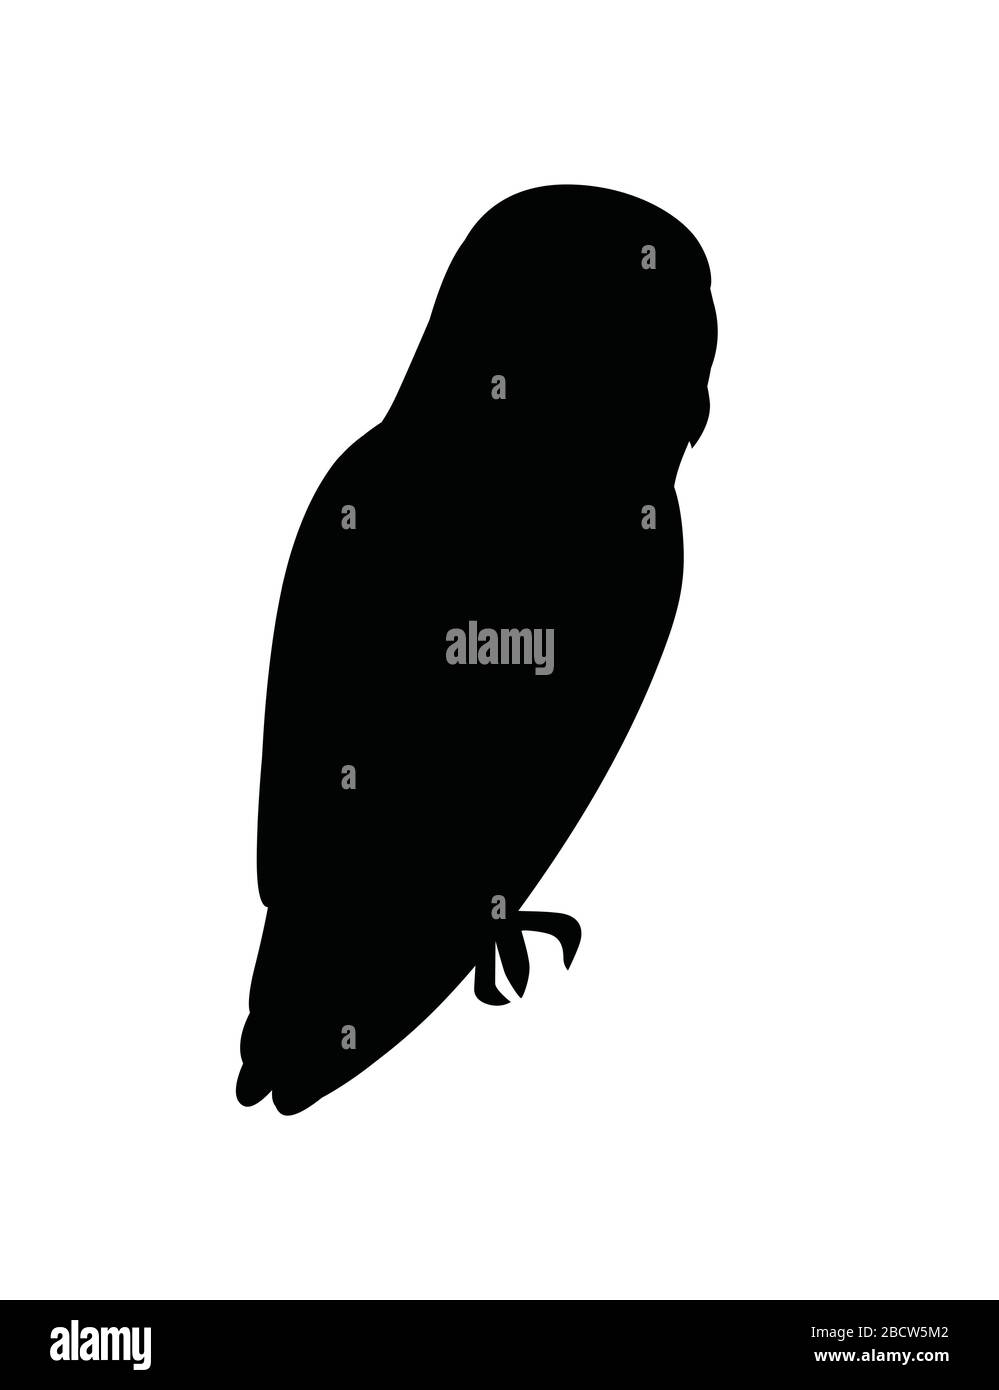 Schwarze Silhouette niedliche Scheune Eule (Tyto alba) Cartoon Wildwald Vogel Tier Design flache Vektorgrafiken isoliert auf weißem Hintergrund Stock Vektor